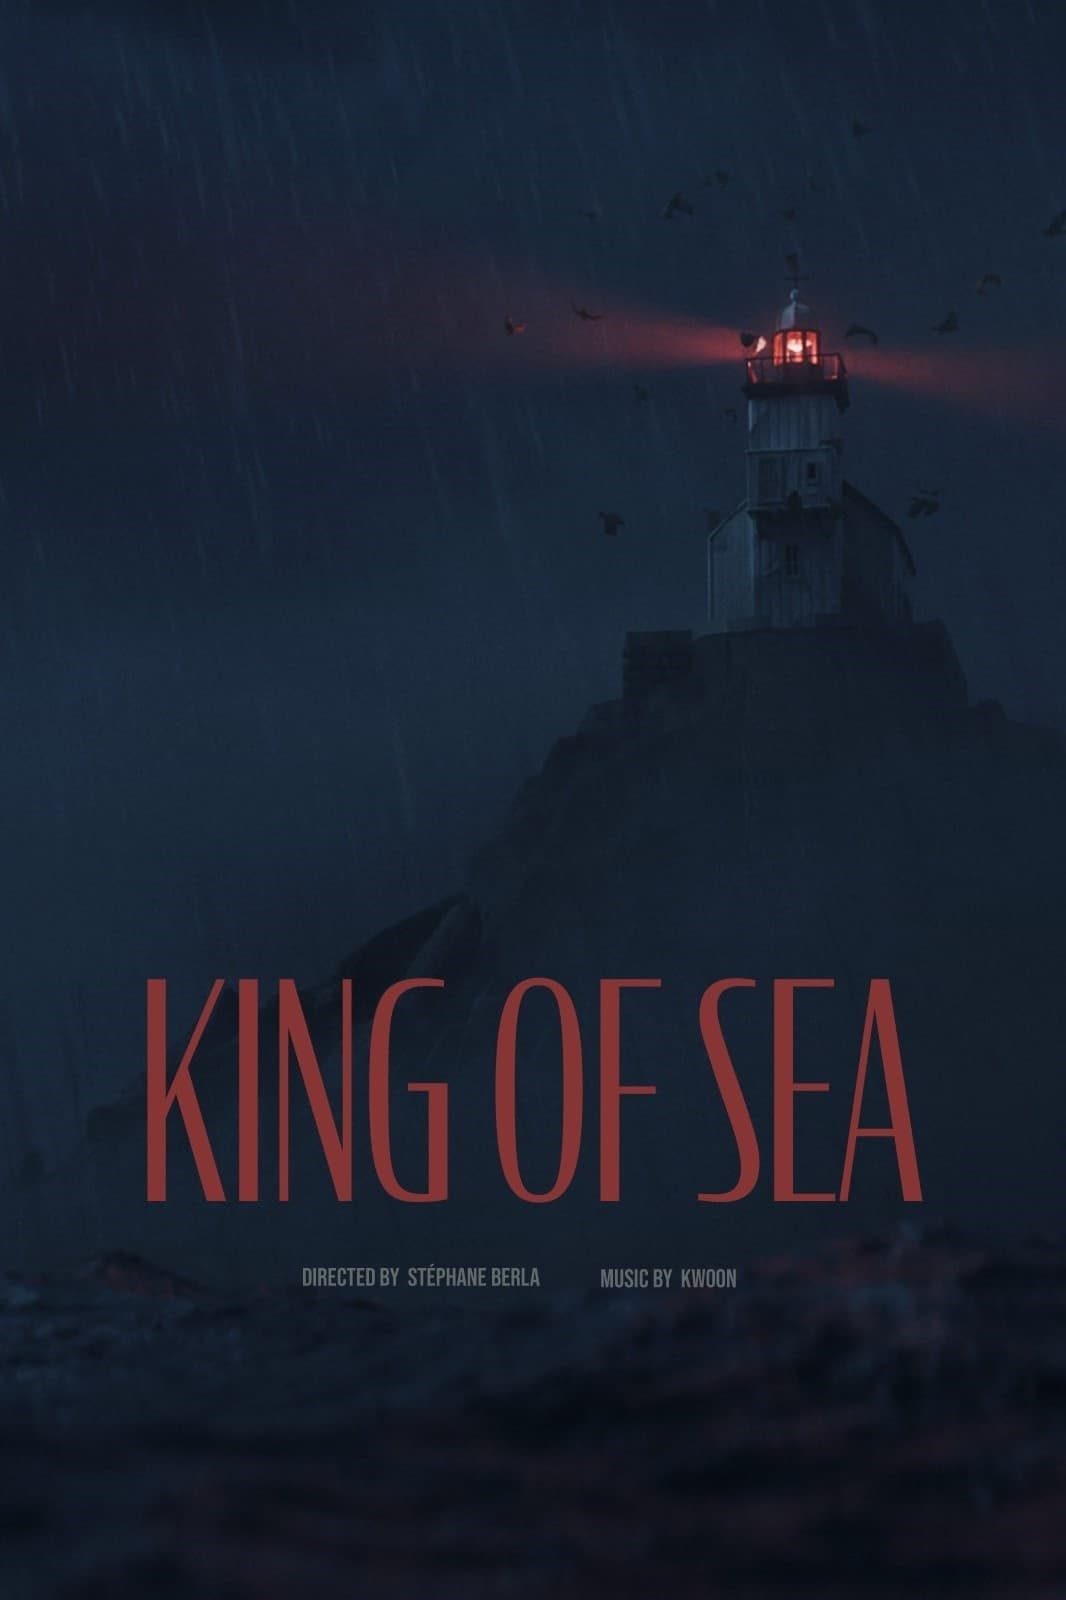 King of Sea